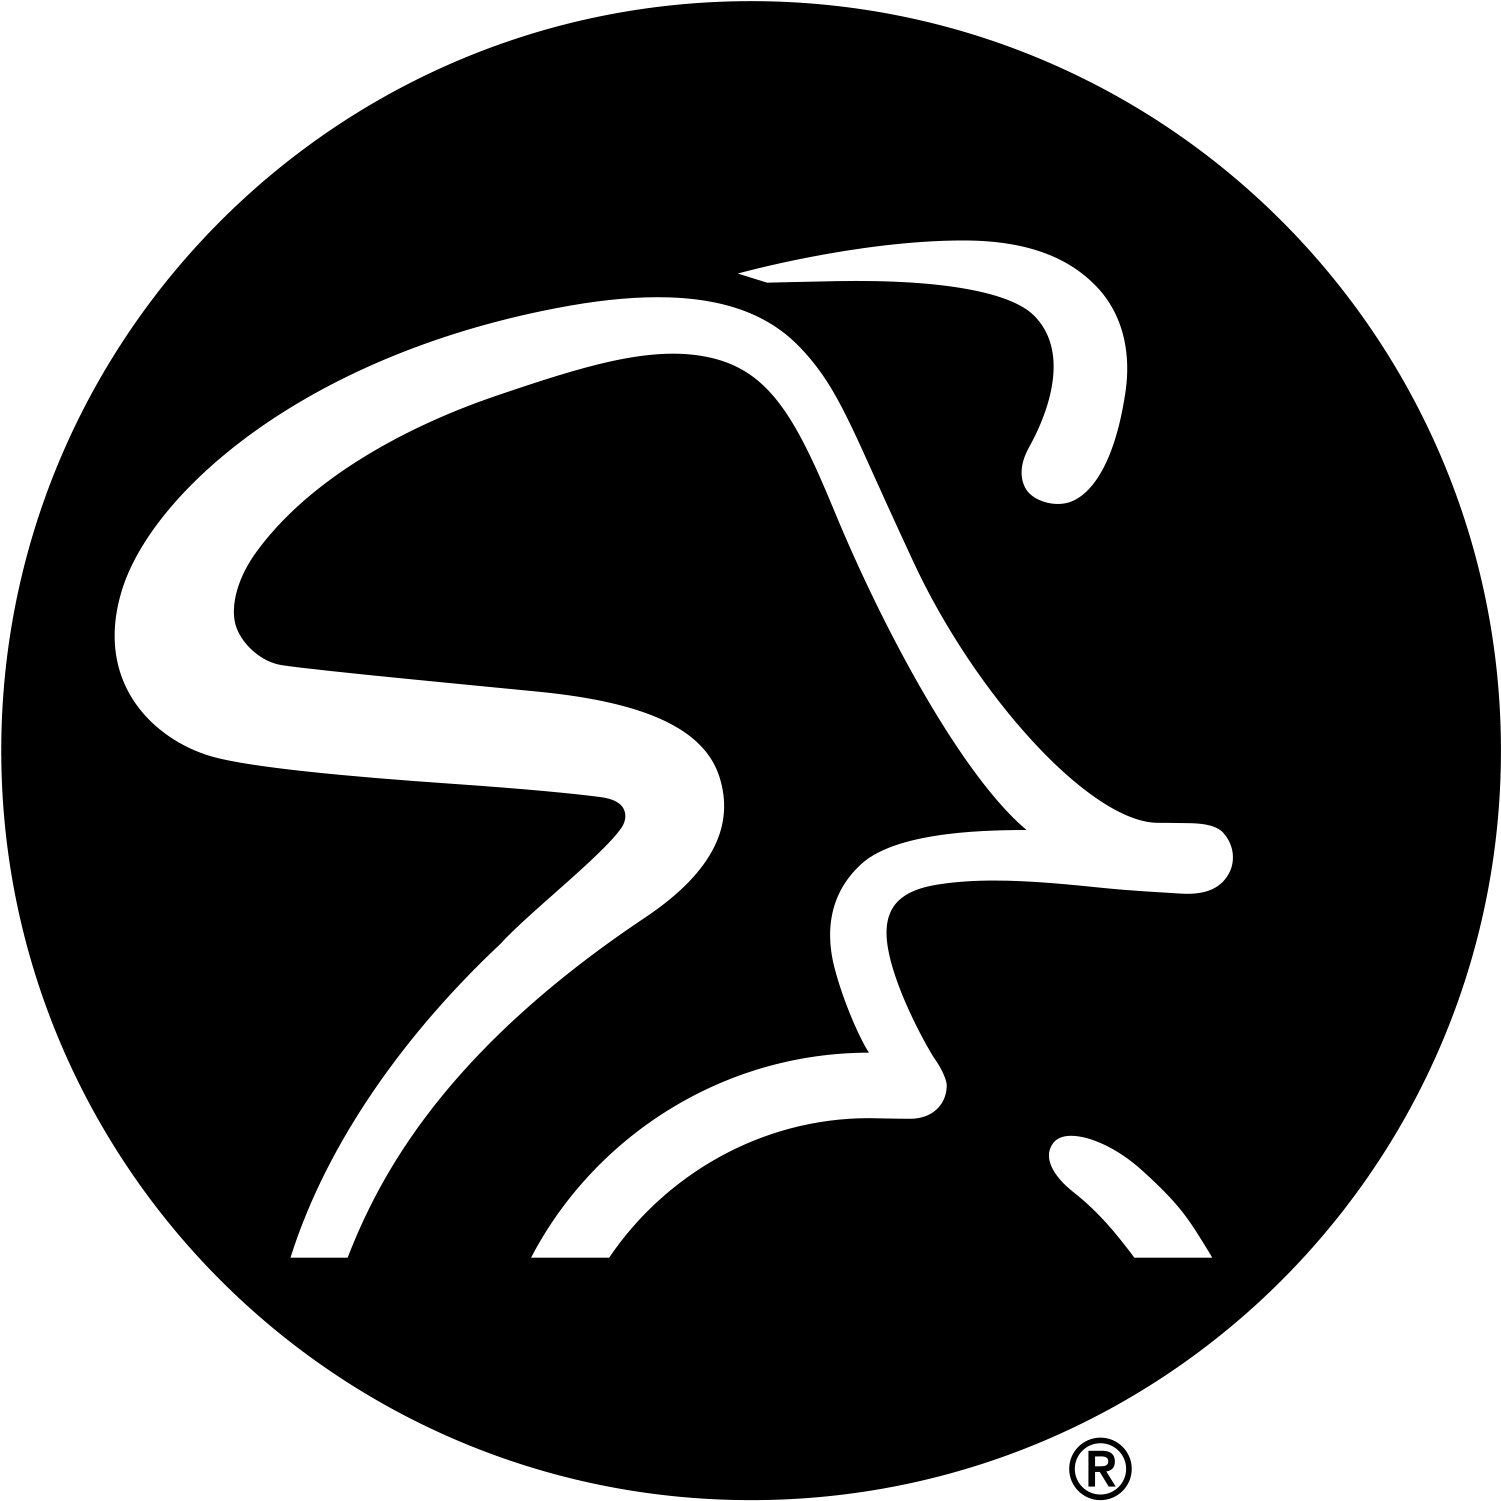 Http spinning. Spinner логотип. Спиннинг логотип. Спин логотип PNG. Spin4spin логотип магазина.